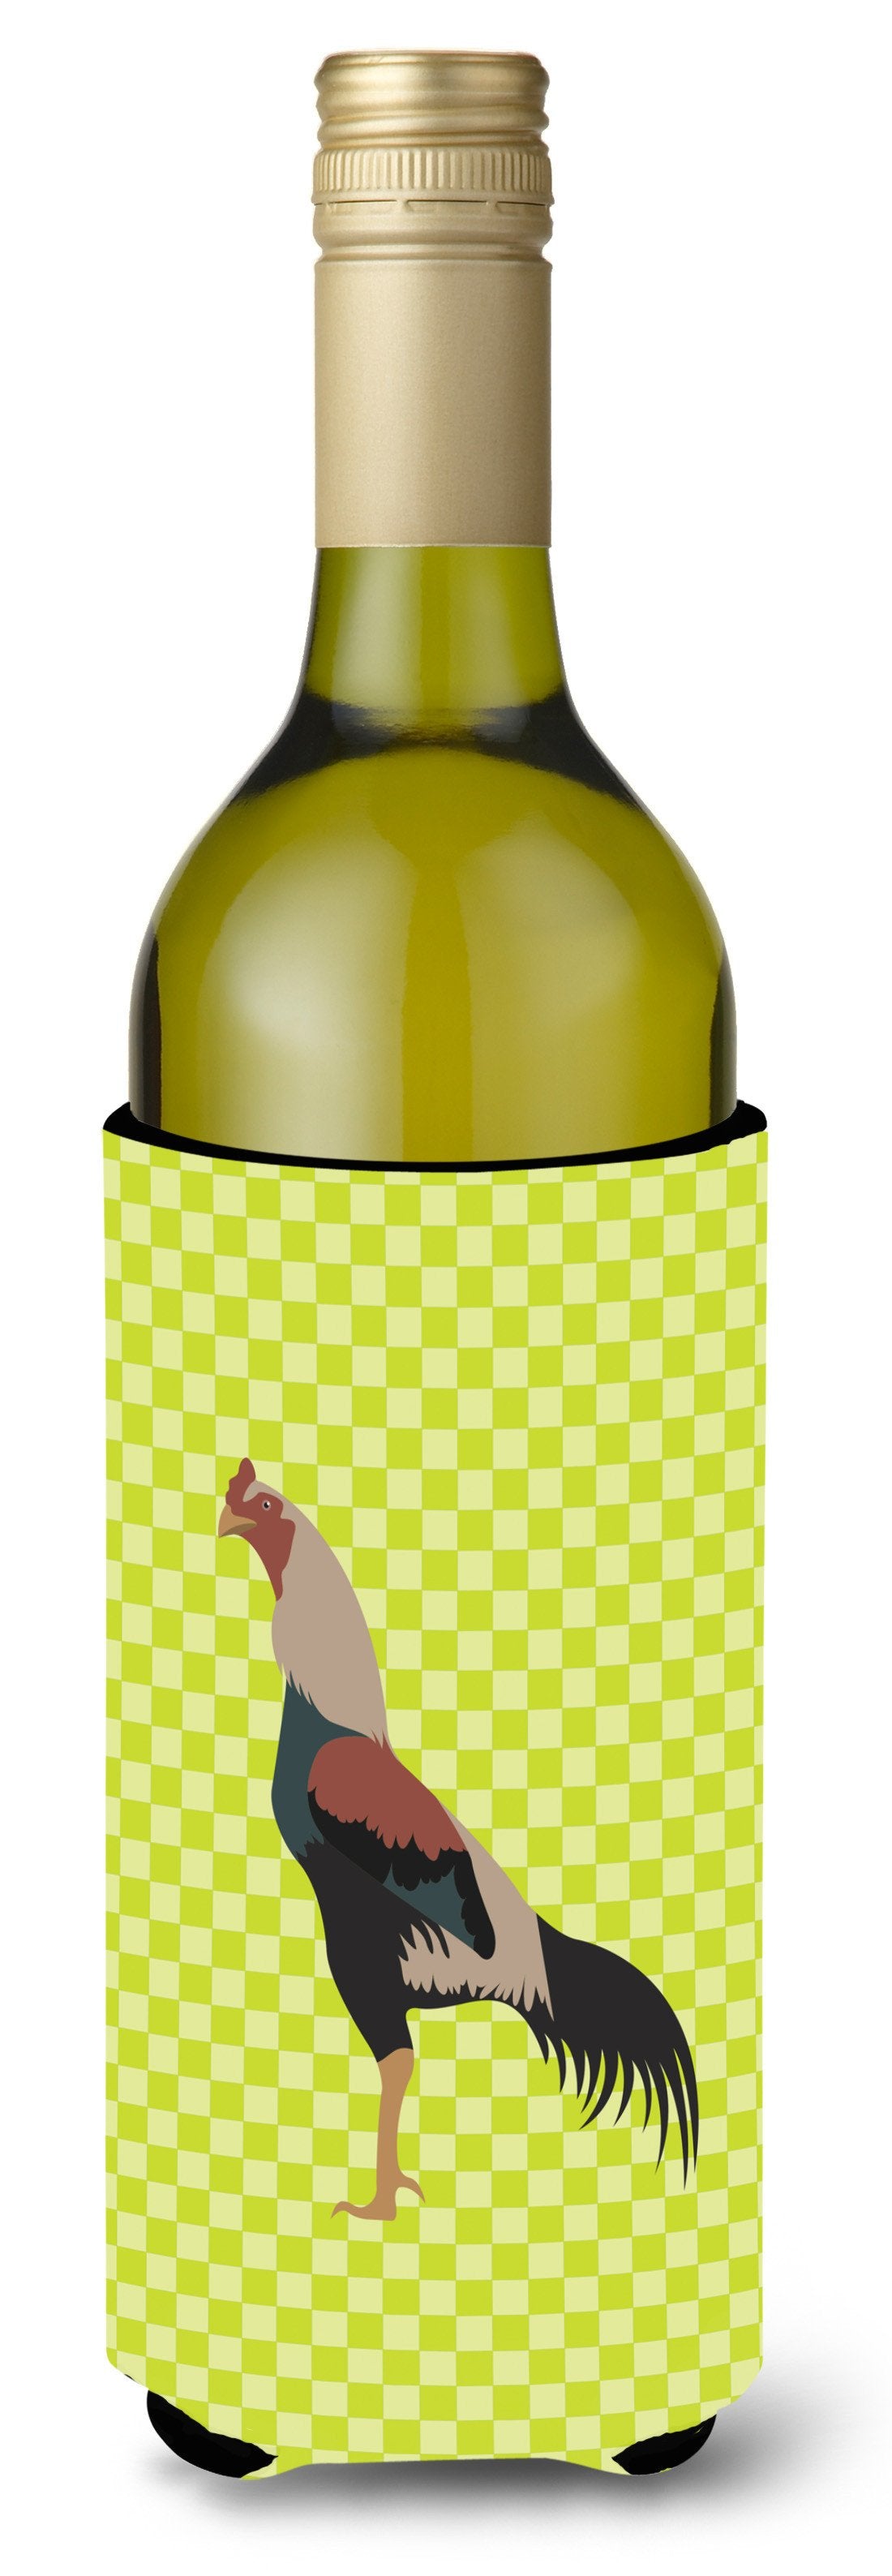 Kulang Chicken Green Wine Bottle Beverge Insulator Hugger BB7664LITERK by Caroline's Treasures